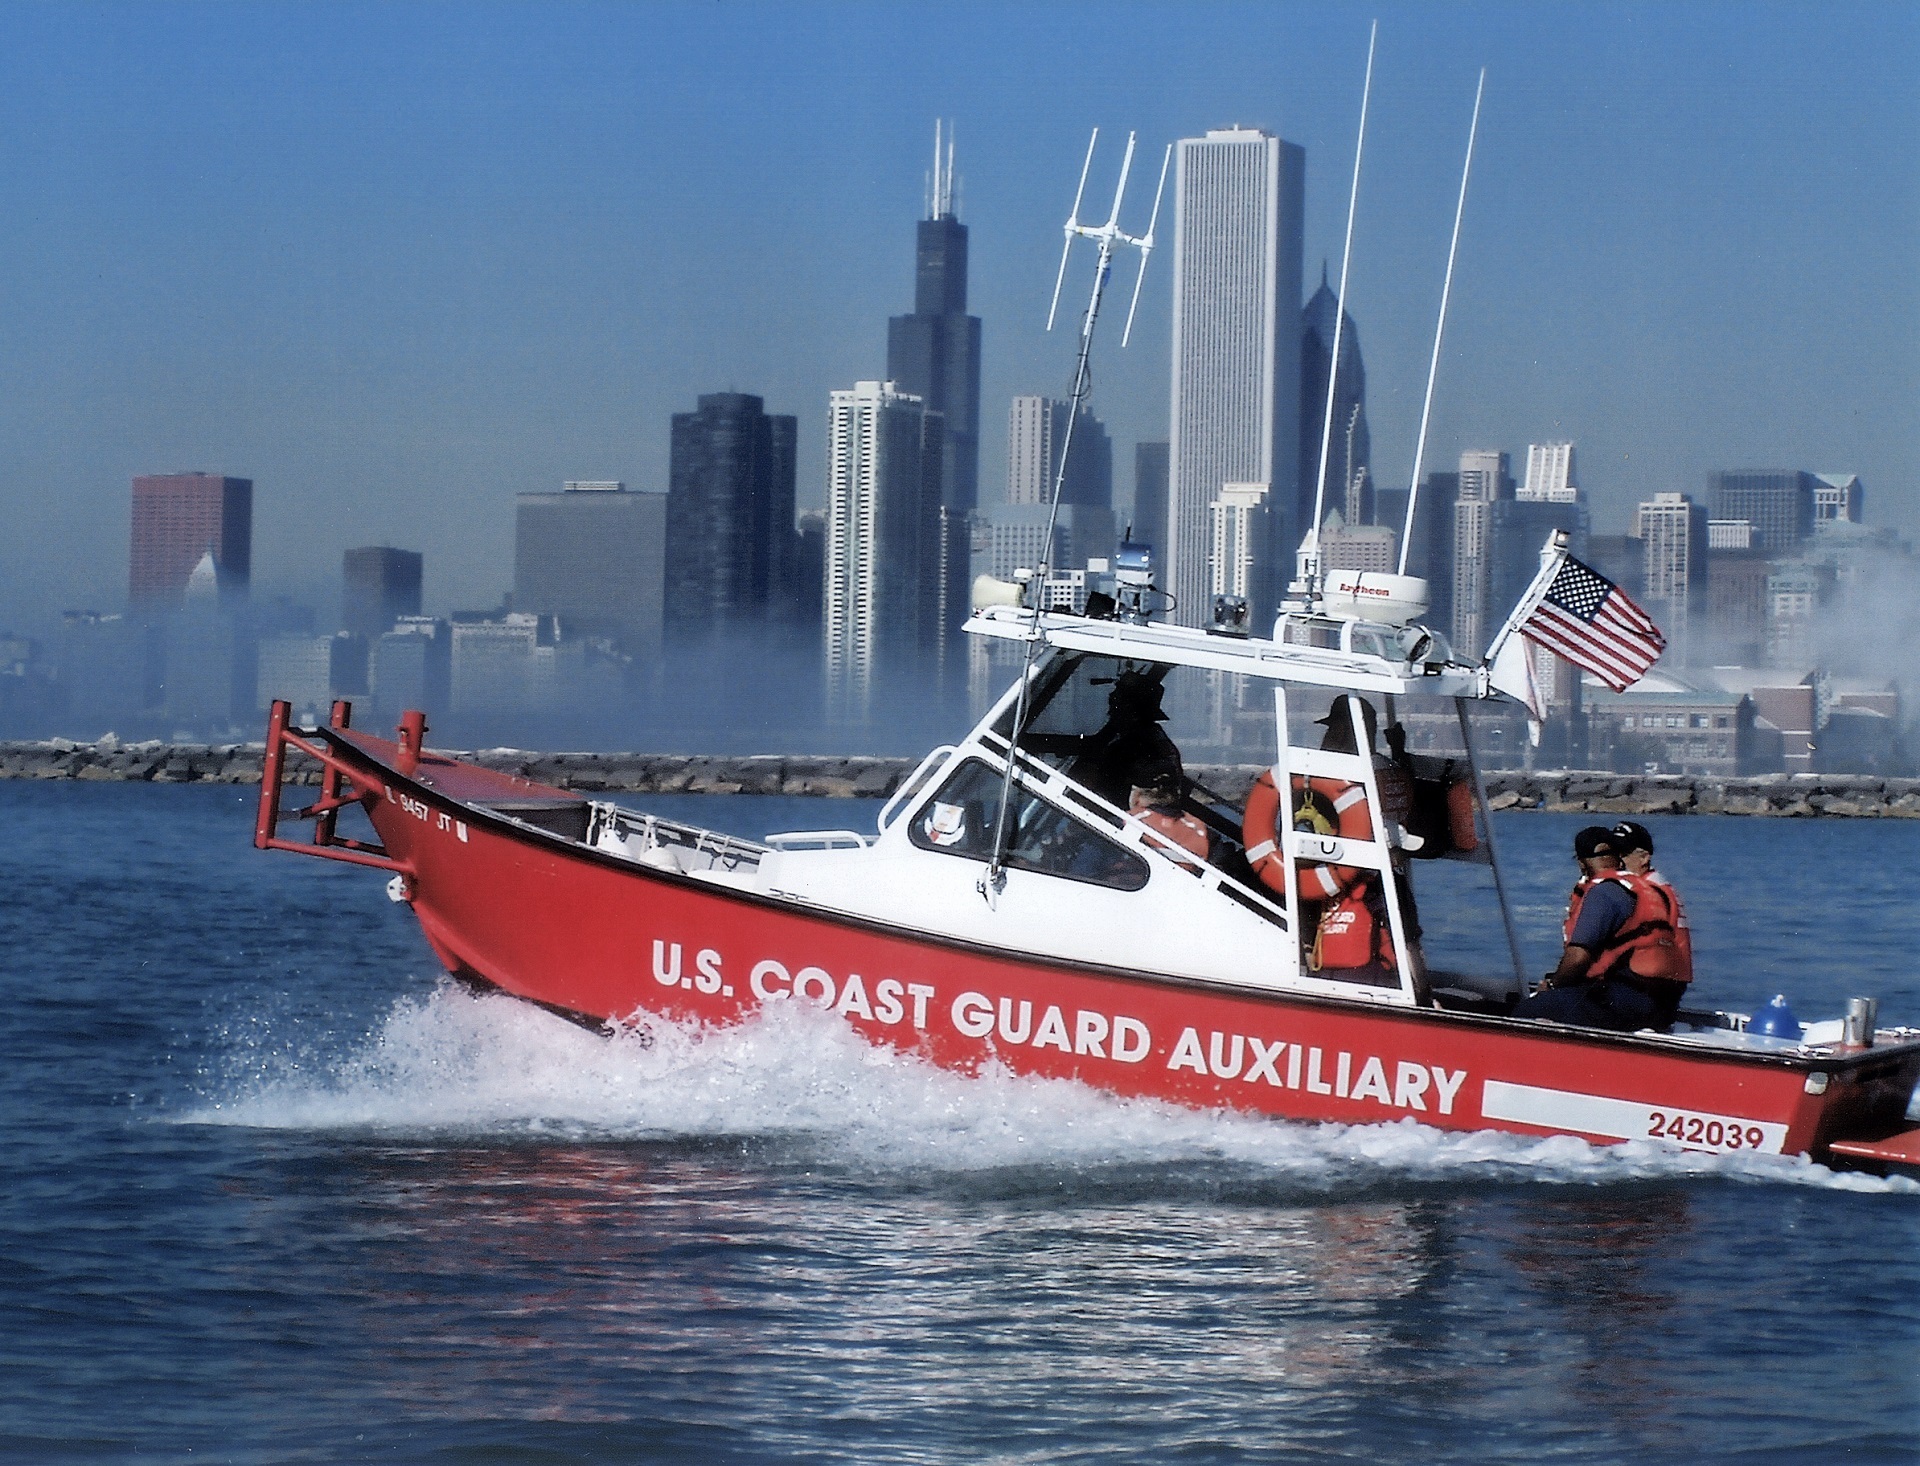 Coast guard photo